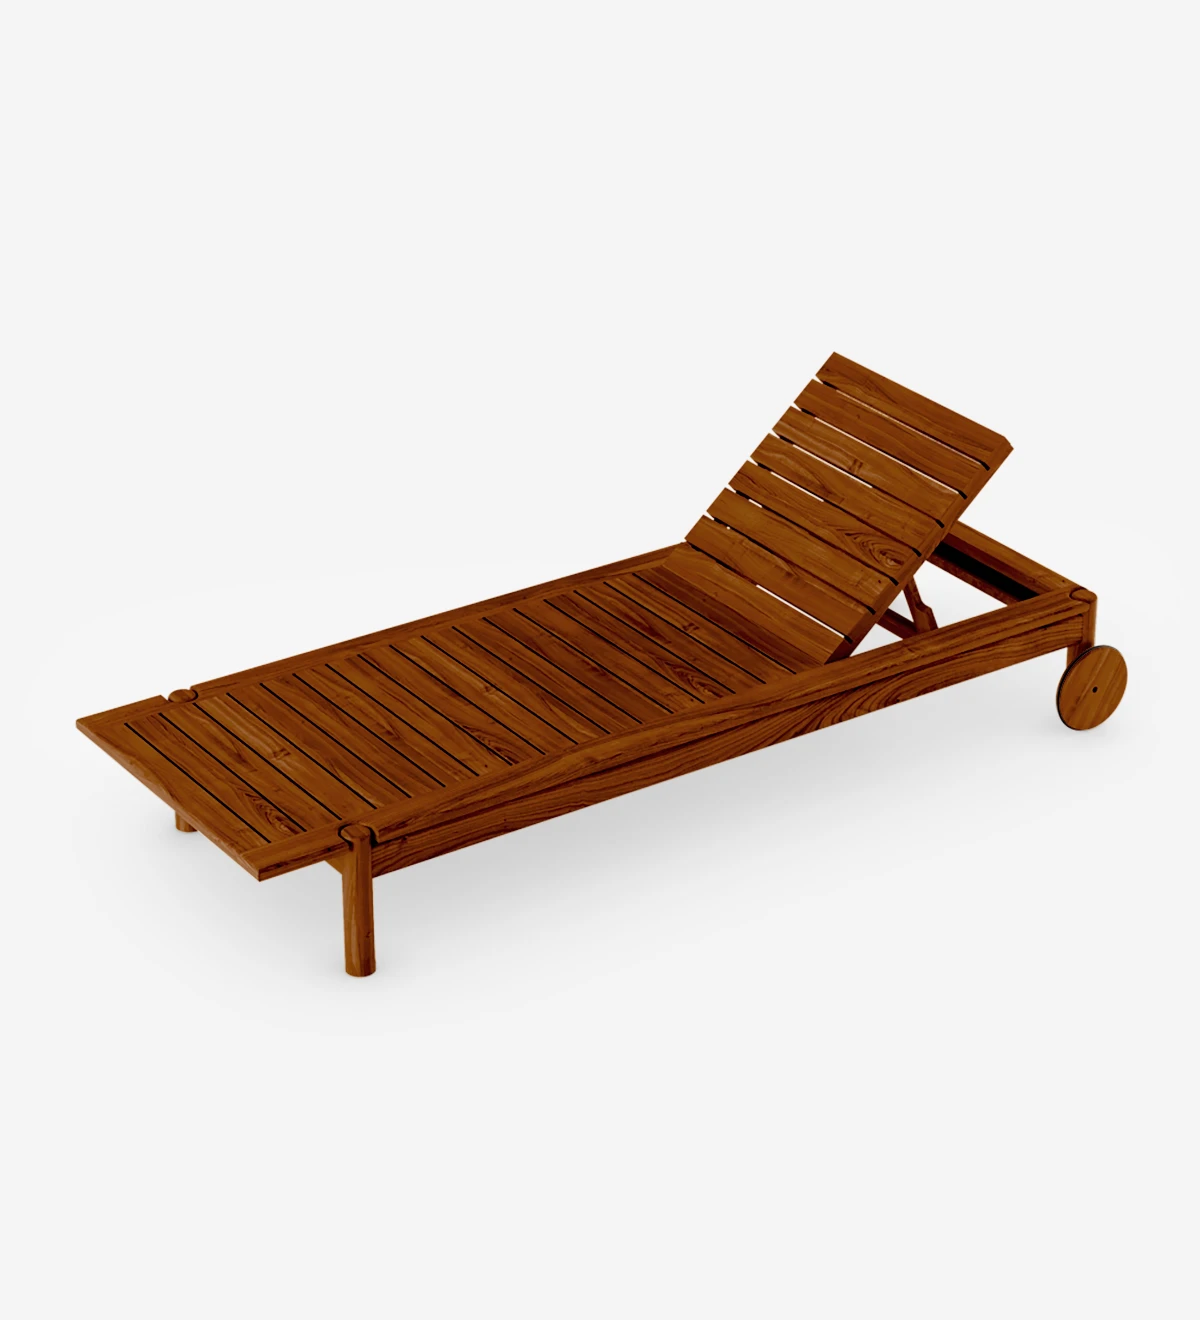 Espreguiçadeira reclinável com almofada estofada a tecido e estrutura em madeira natural cor mel.